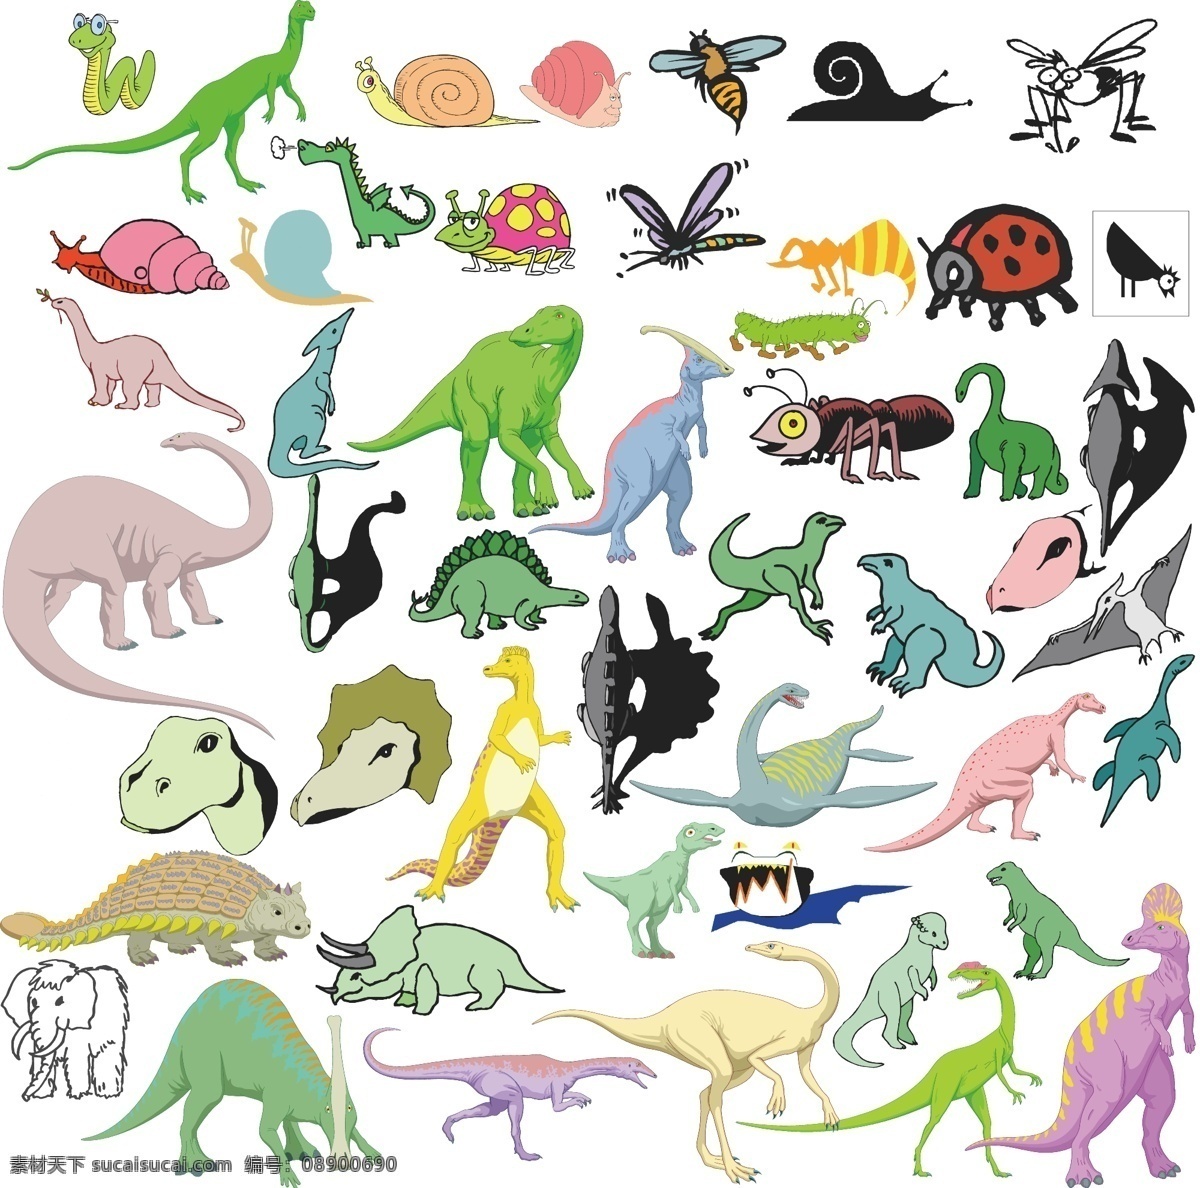 恐龙 卡通 霸王龙 白垩纪 翼龙 中世纪 动物 动物图形元素 野生动物 生物世界 矢量